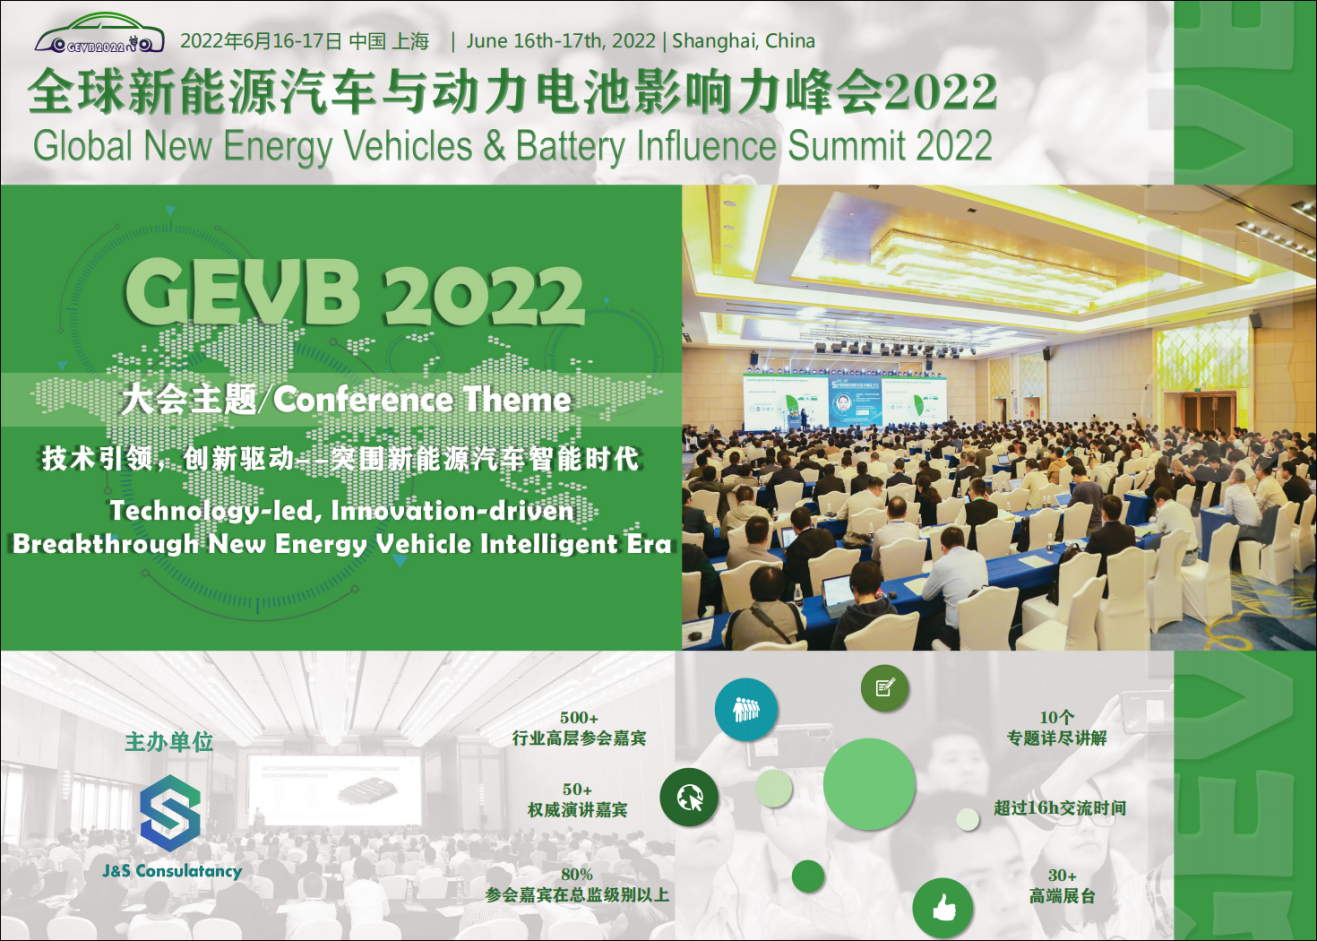 全球新能源汽车与动力电池影响力峰会2022将于六月在上海召开